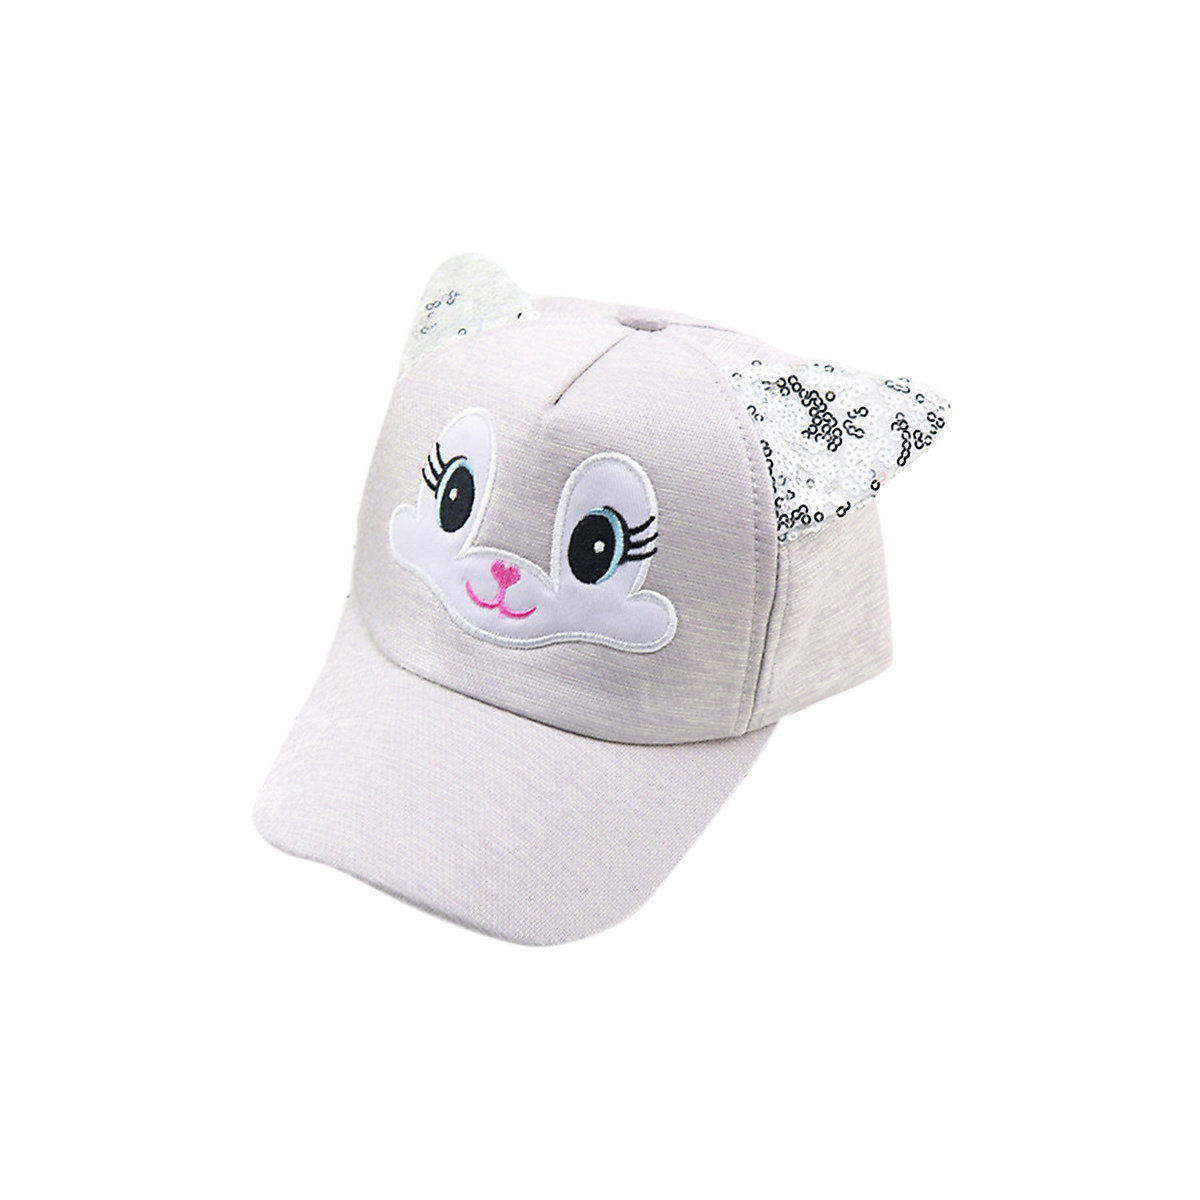 Vicabo Basecap Pailletten Katze Ohren Caps für Kinder grau